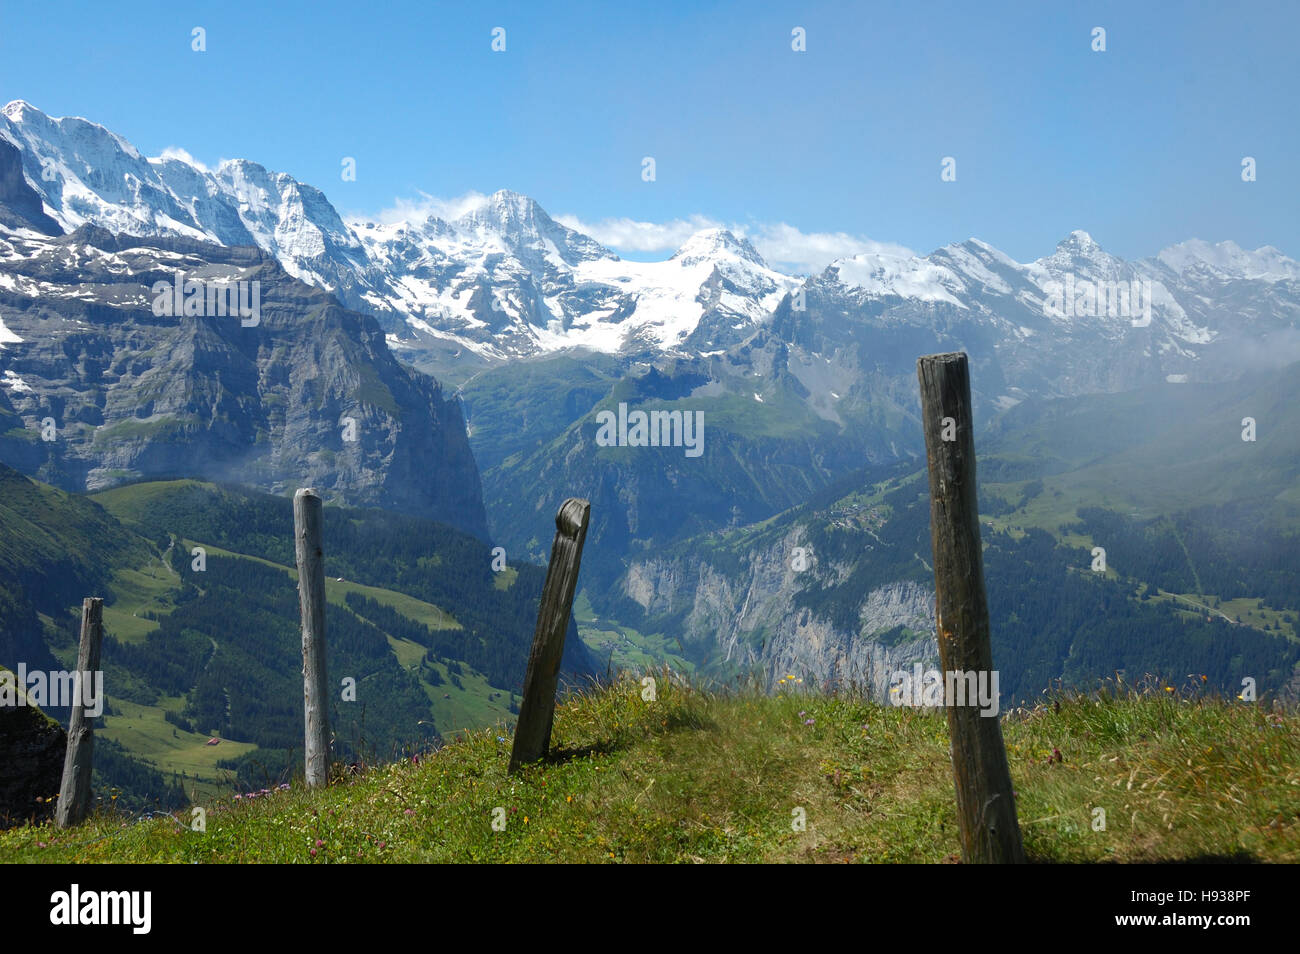 Valle di Lauterbrunnen nella Svizzera Oberland bernese con le cime innevate delle Alpi in background. Foto Stock